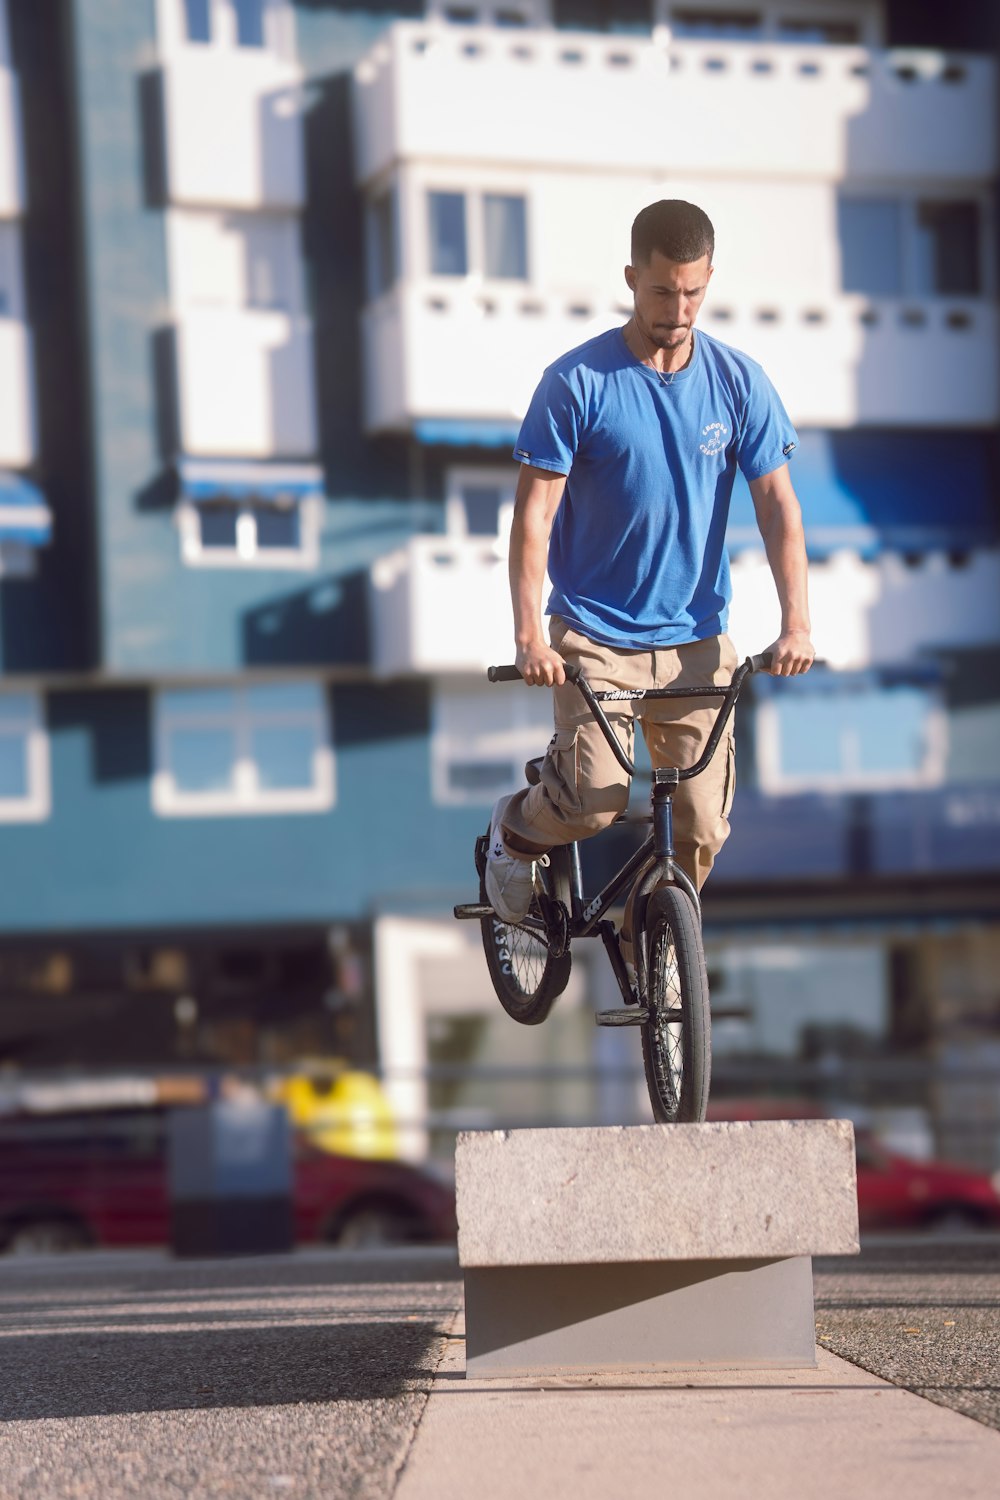 セメントブロックの上を自転車で走る男性